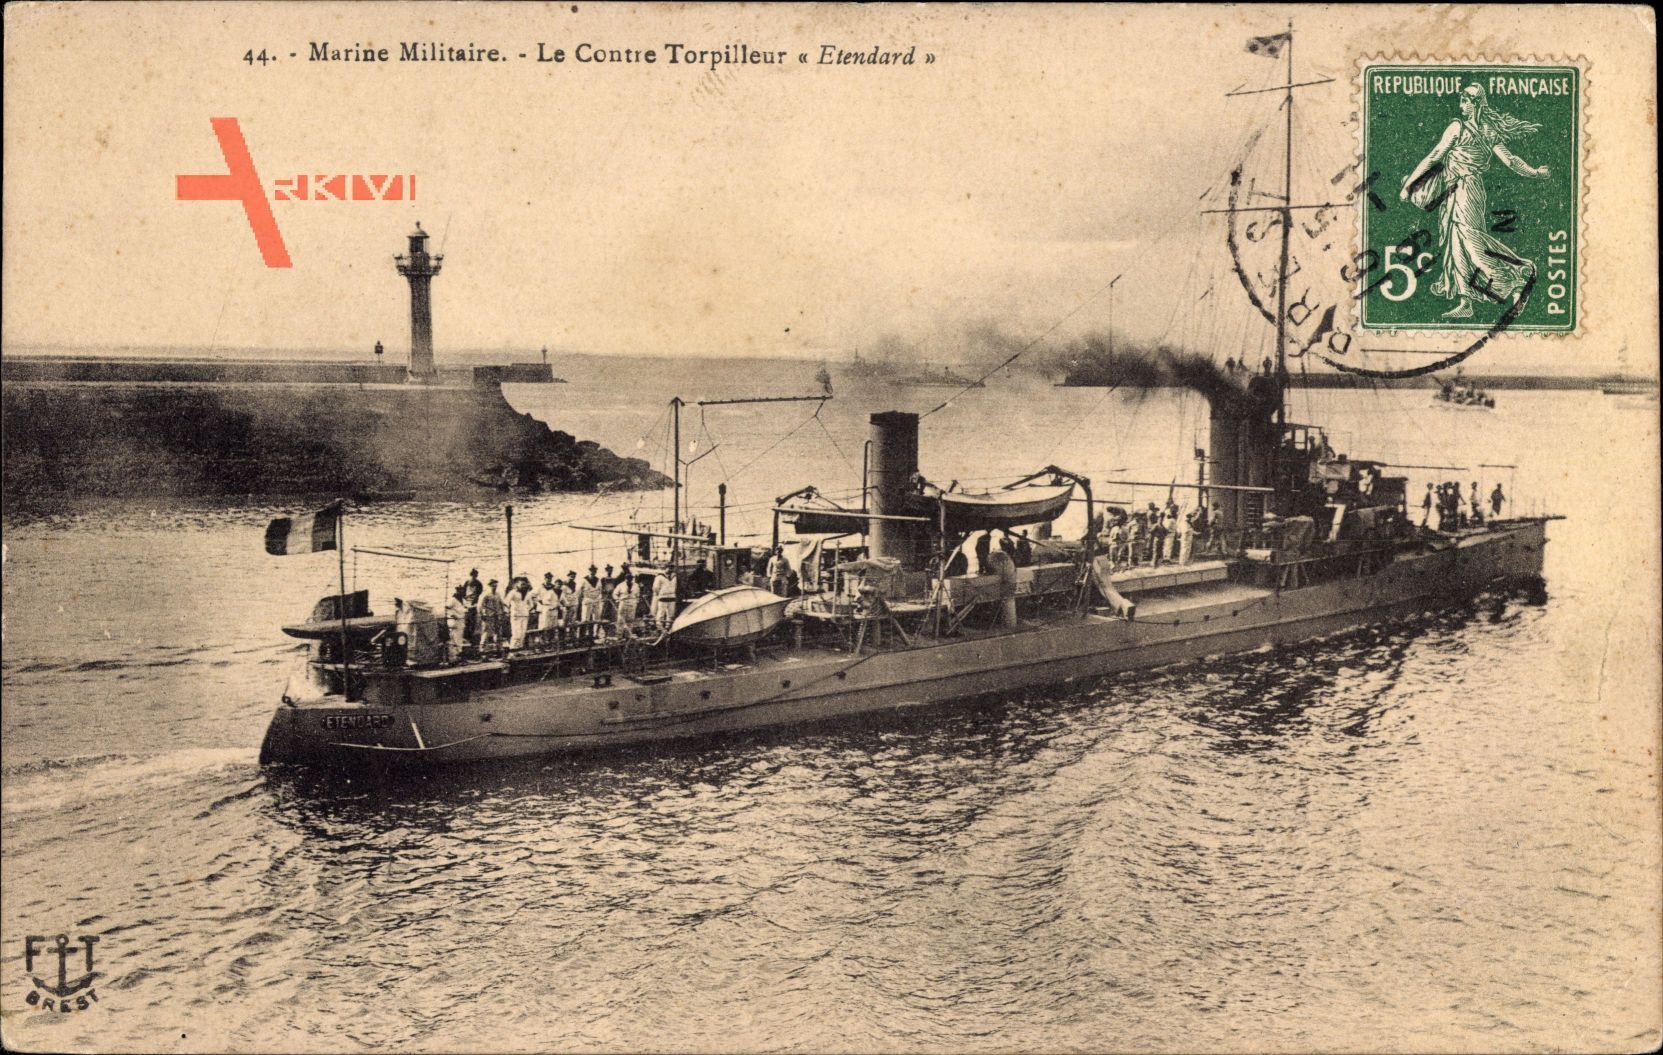 Französisches Kriegsschiff Etendard, Contre Torpilleur, Marine Militaire